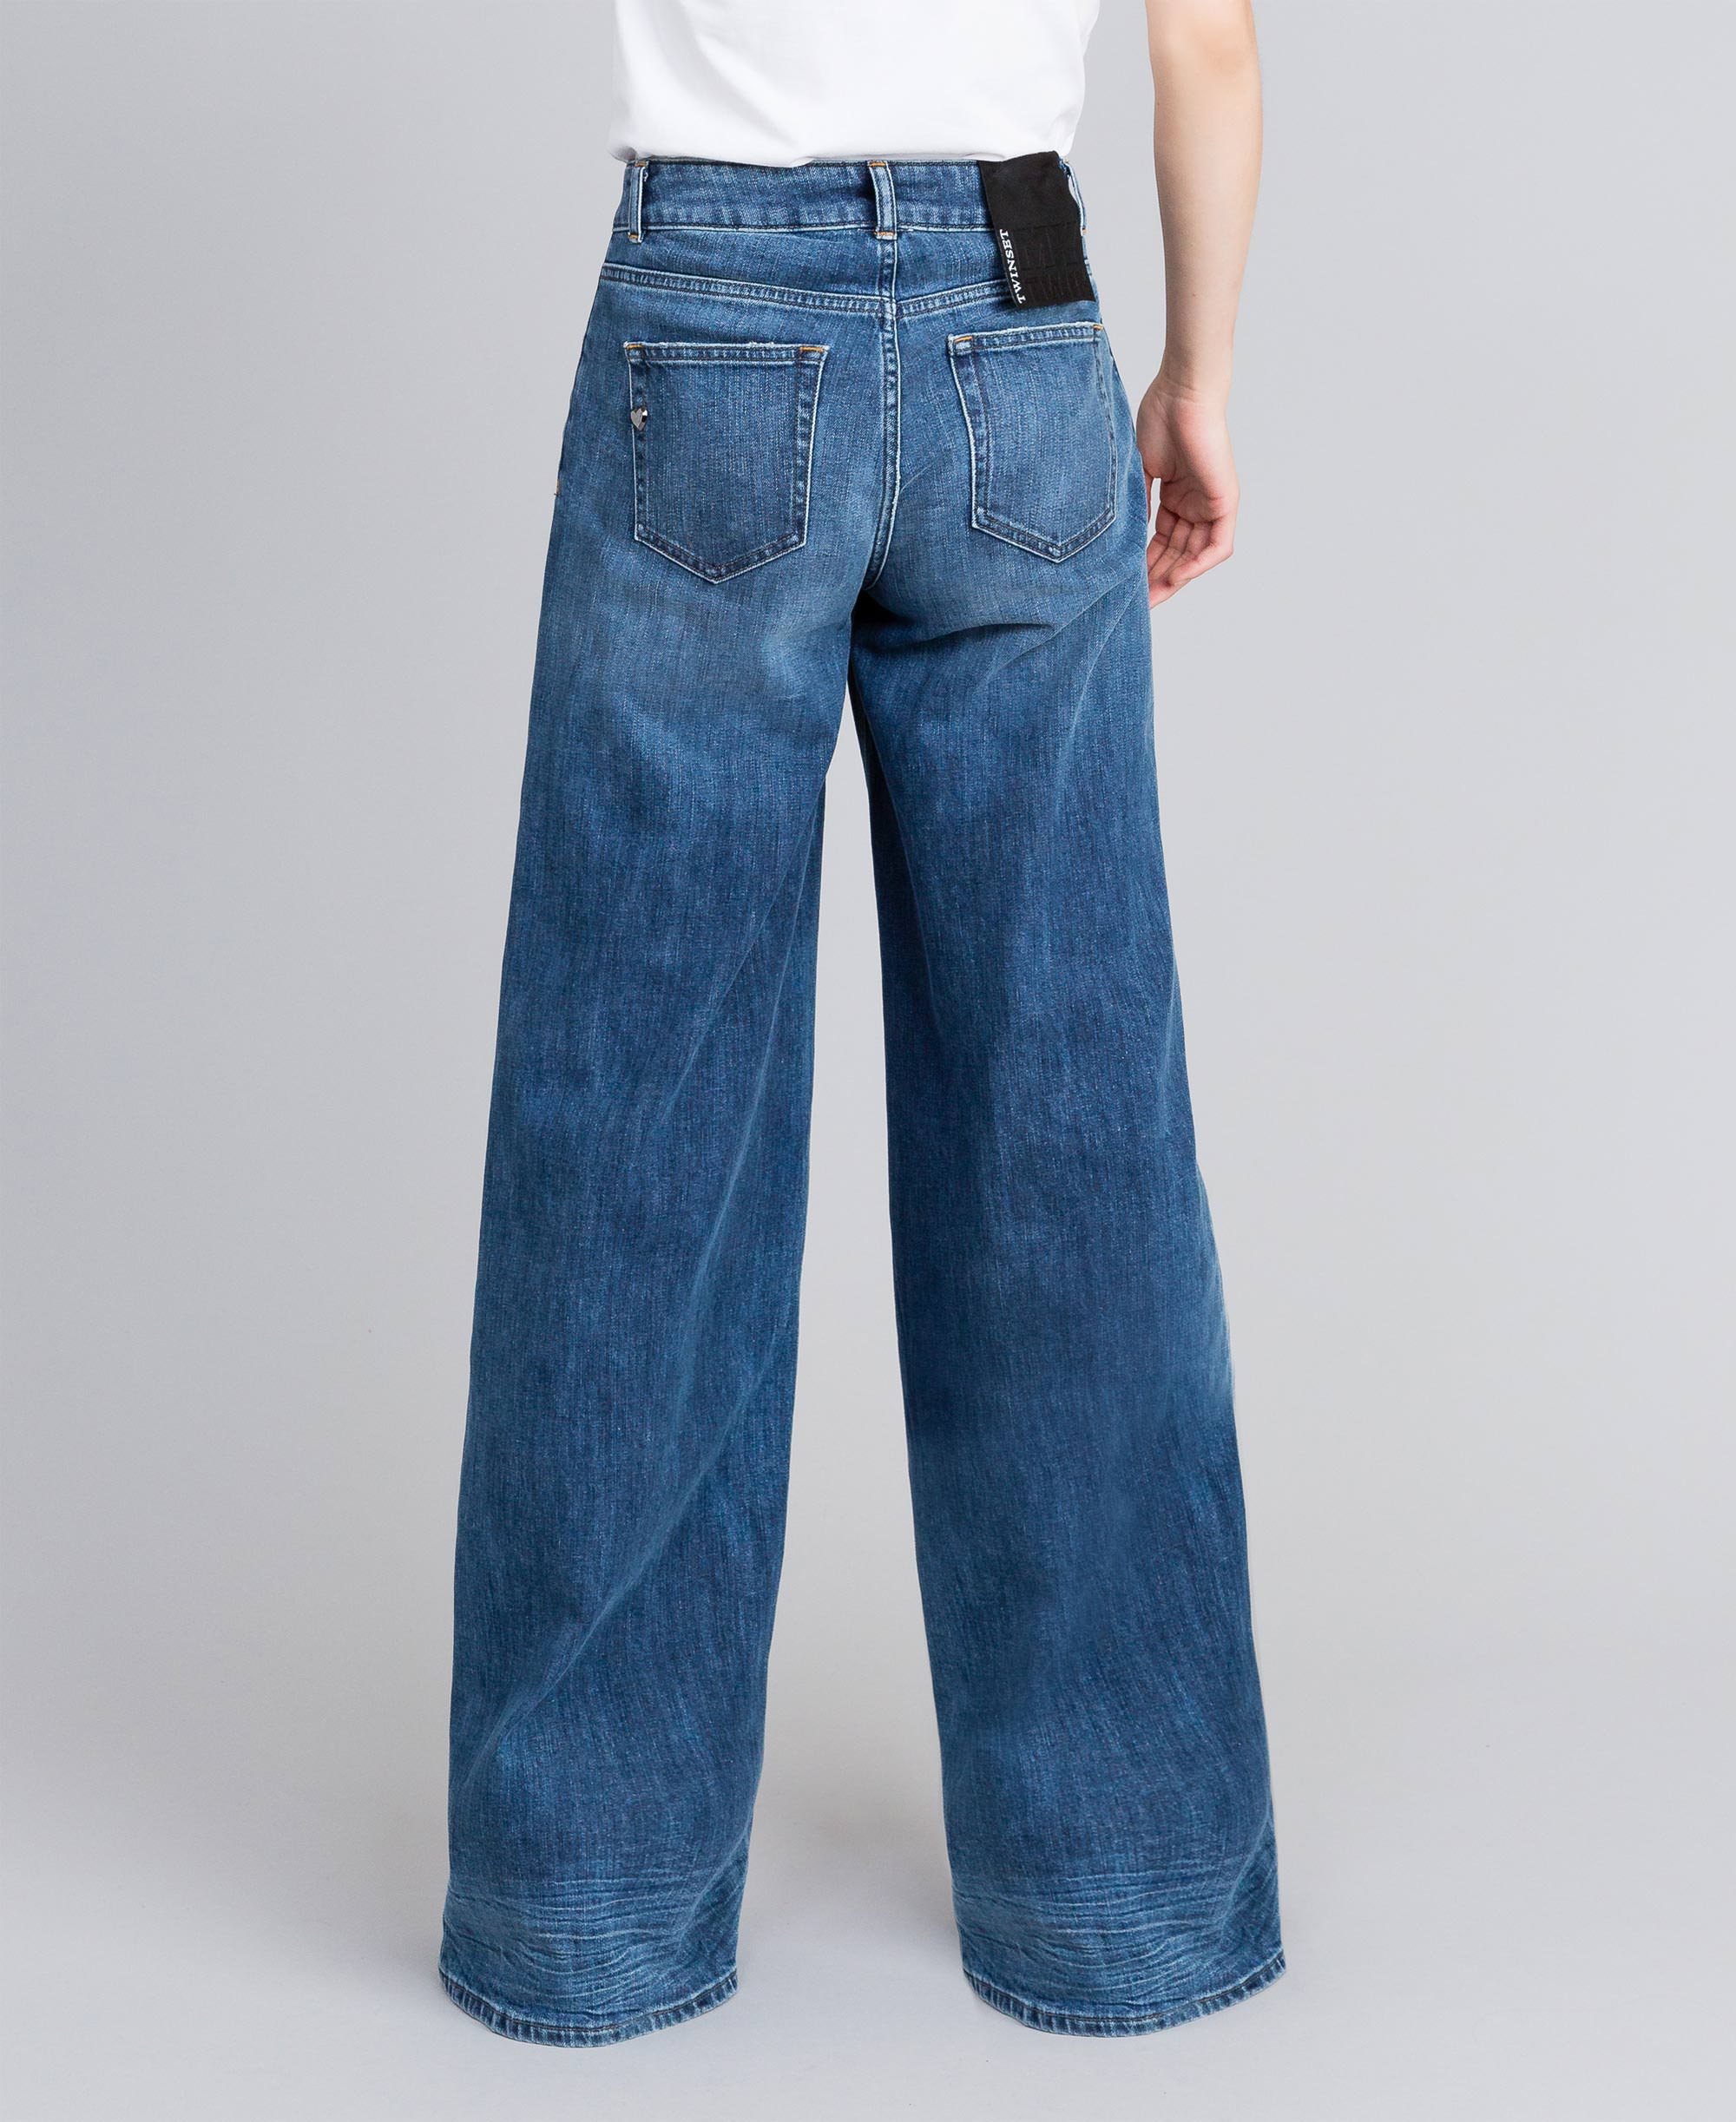 Jeans wide leg in denim